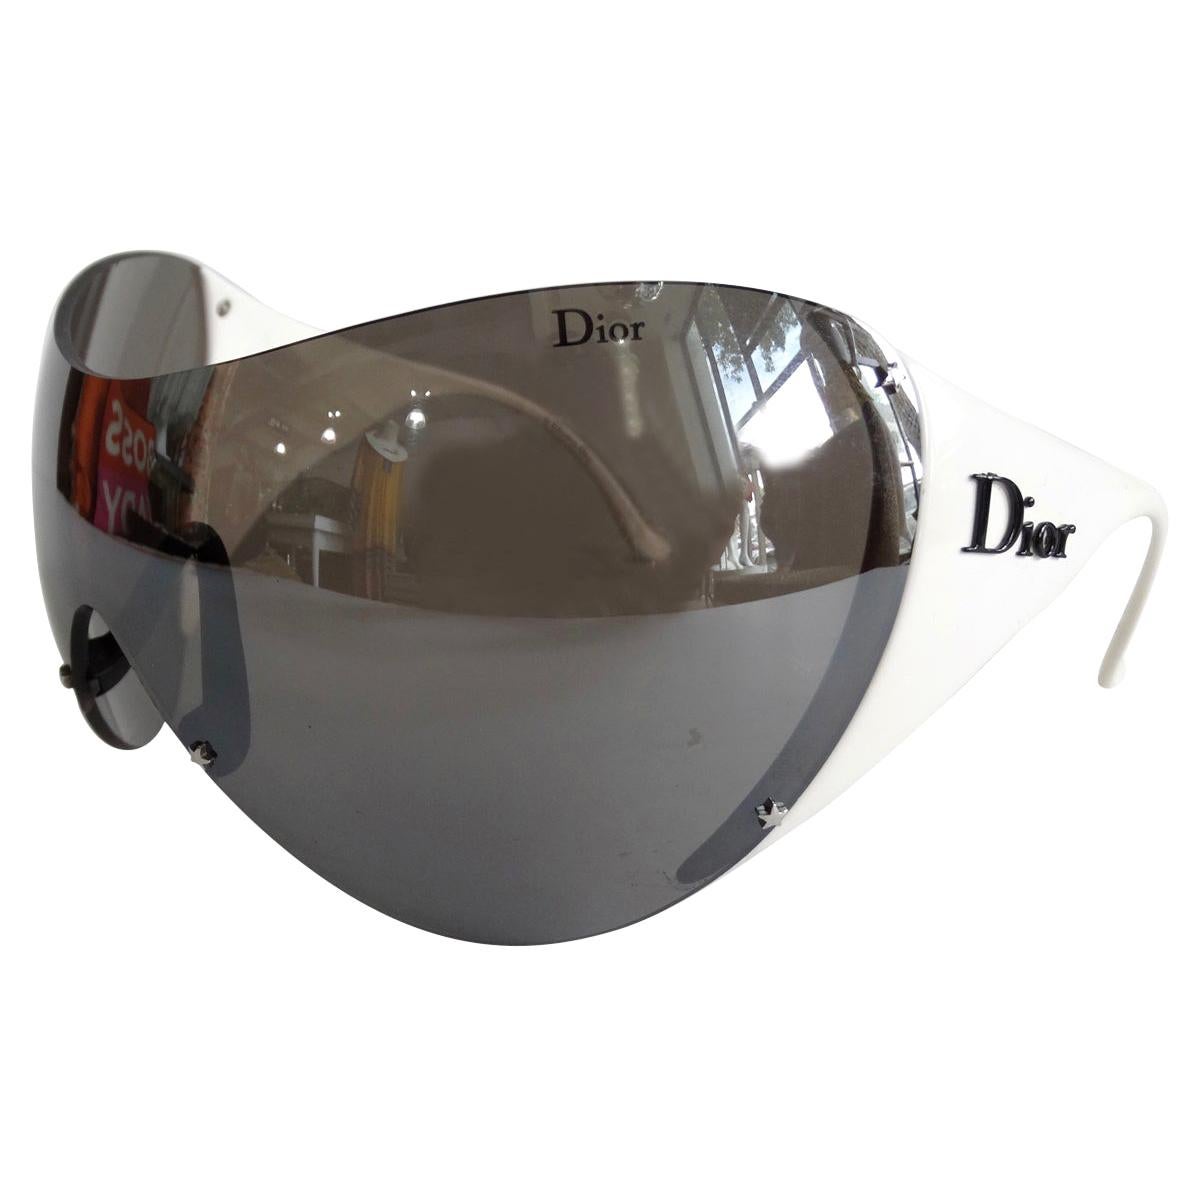 dior ski glasses